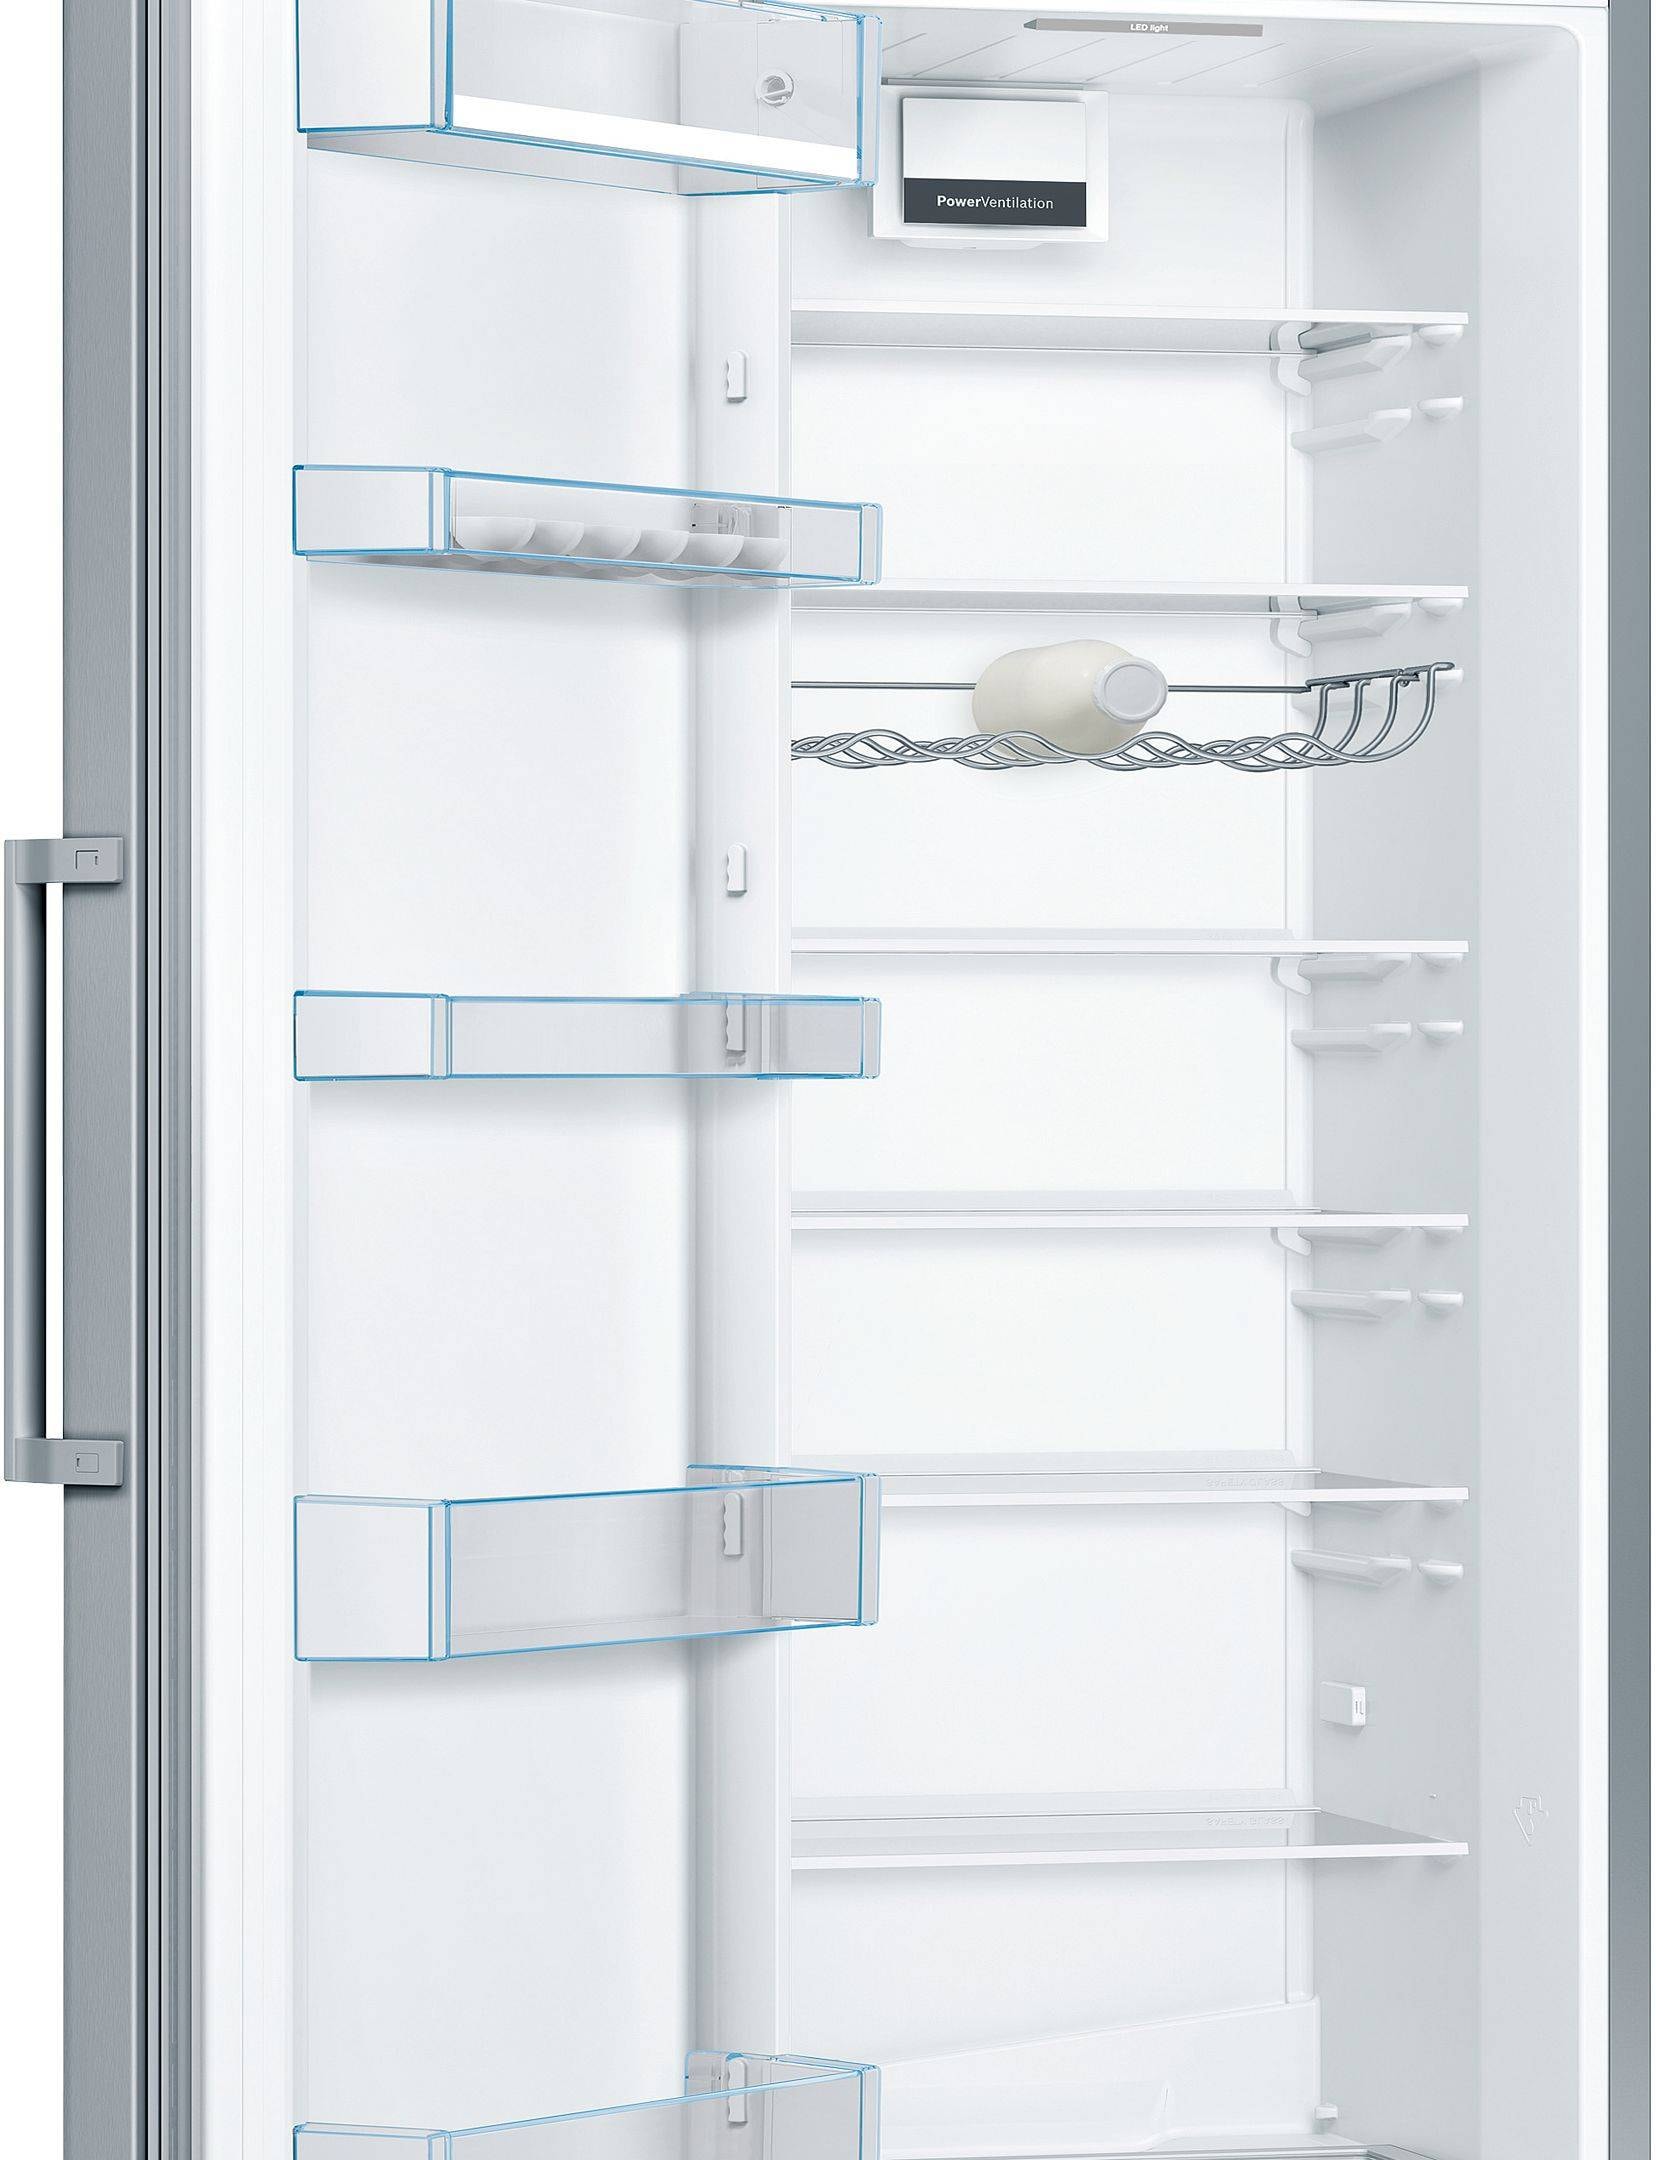 BOSCH Réfrigérateur 1 porte  - KSV36VLDP